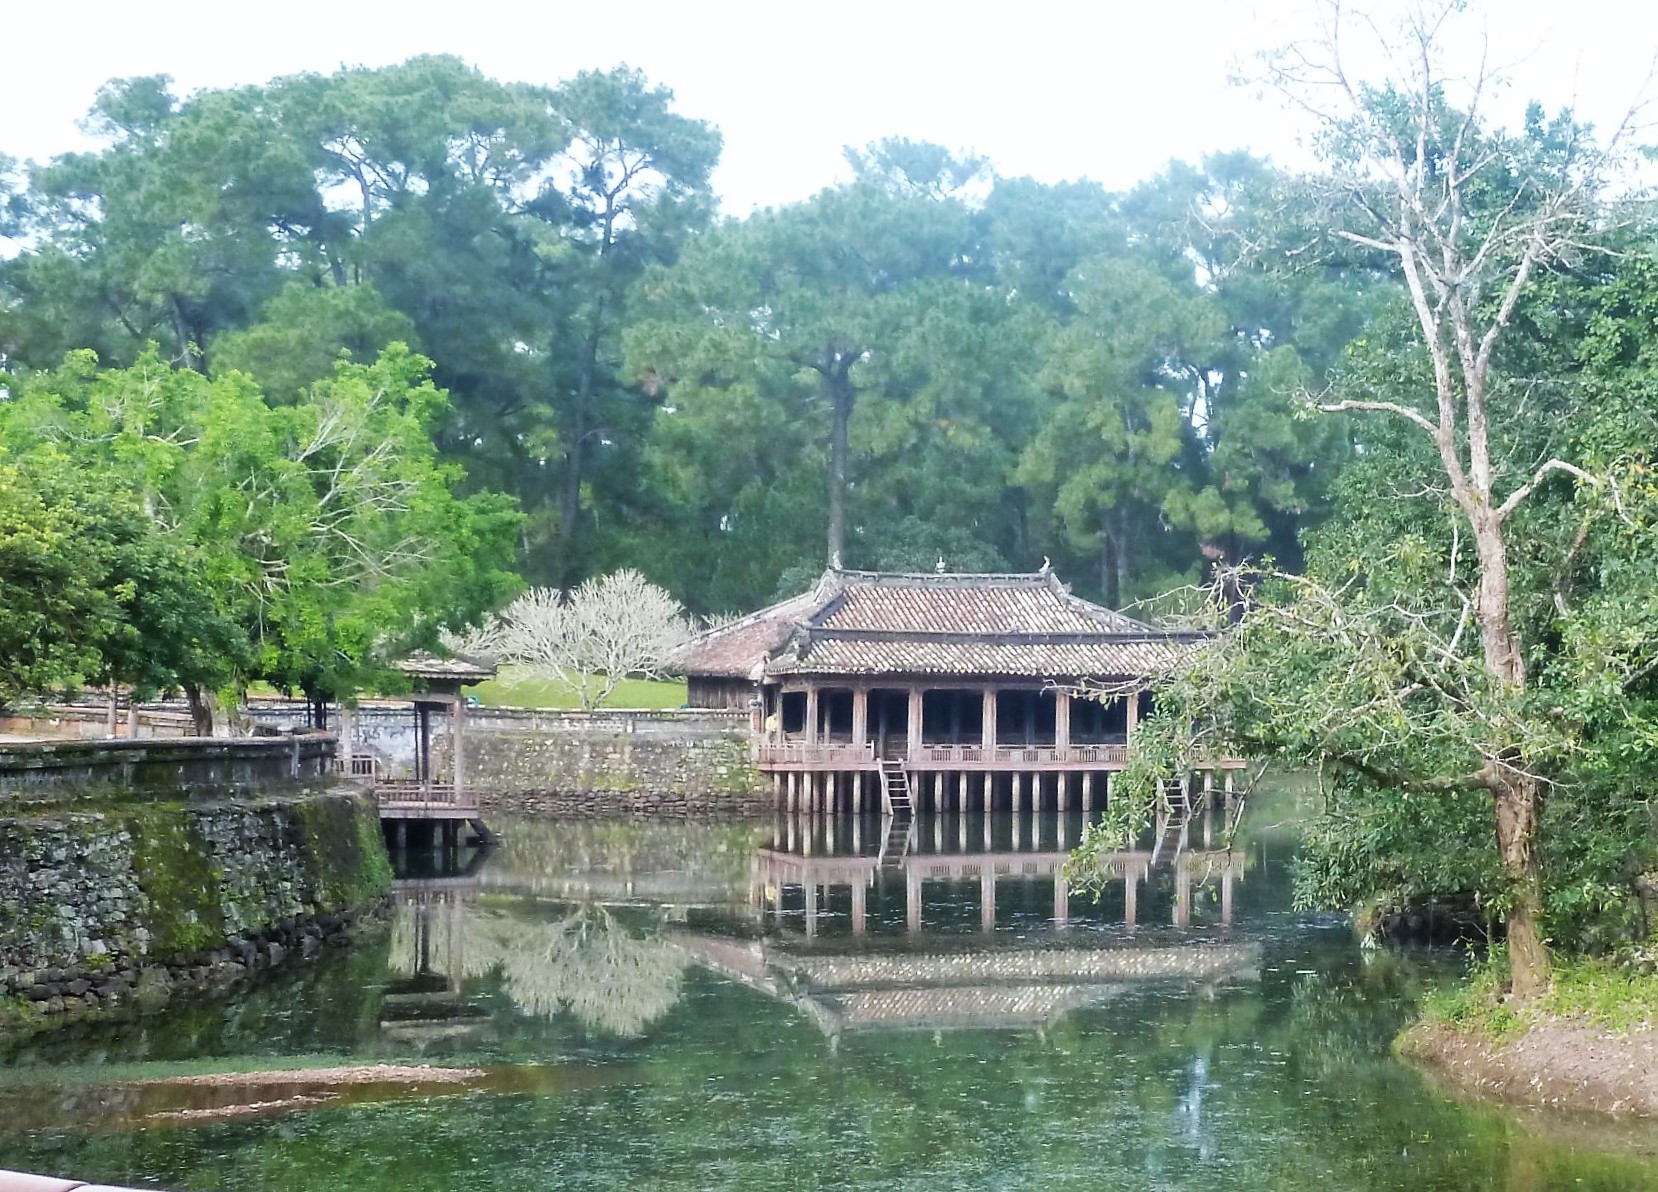 Pavillon and lotus pond